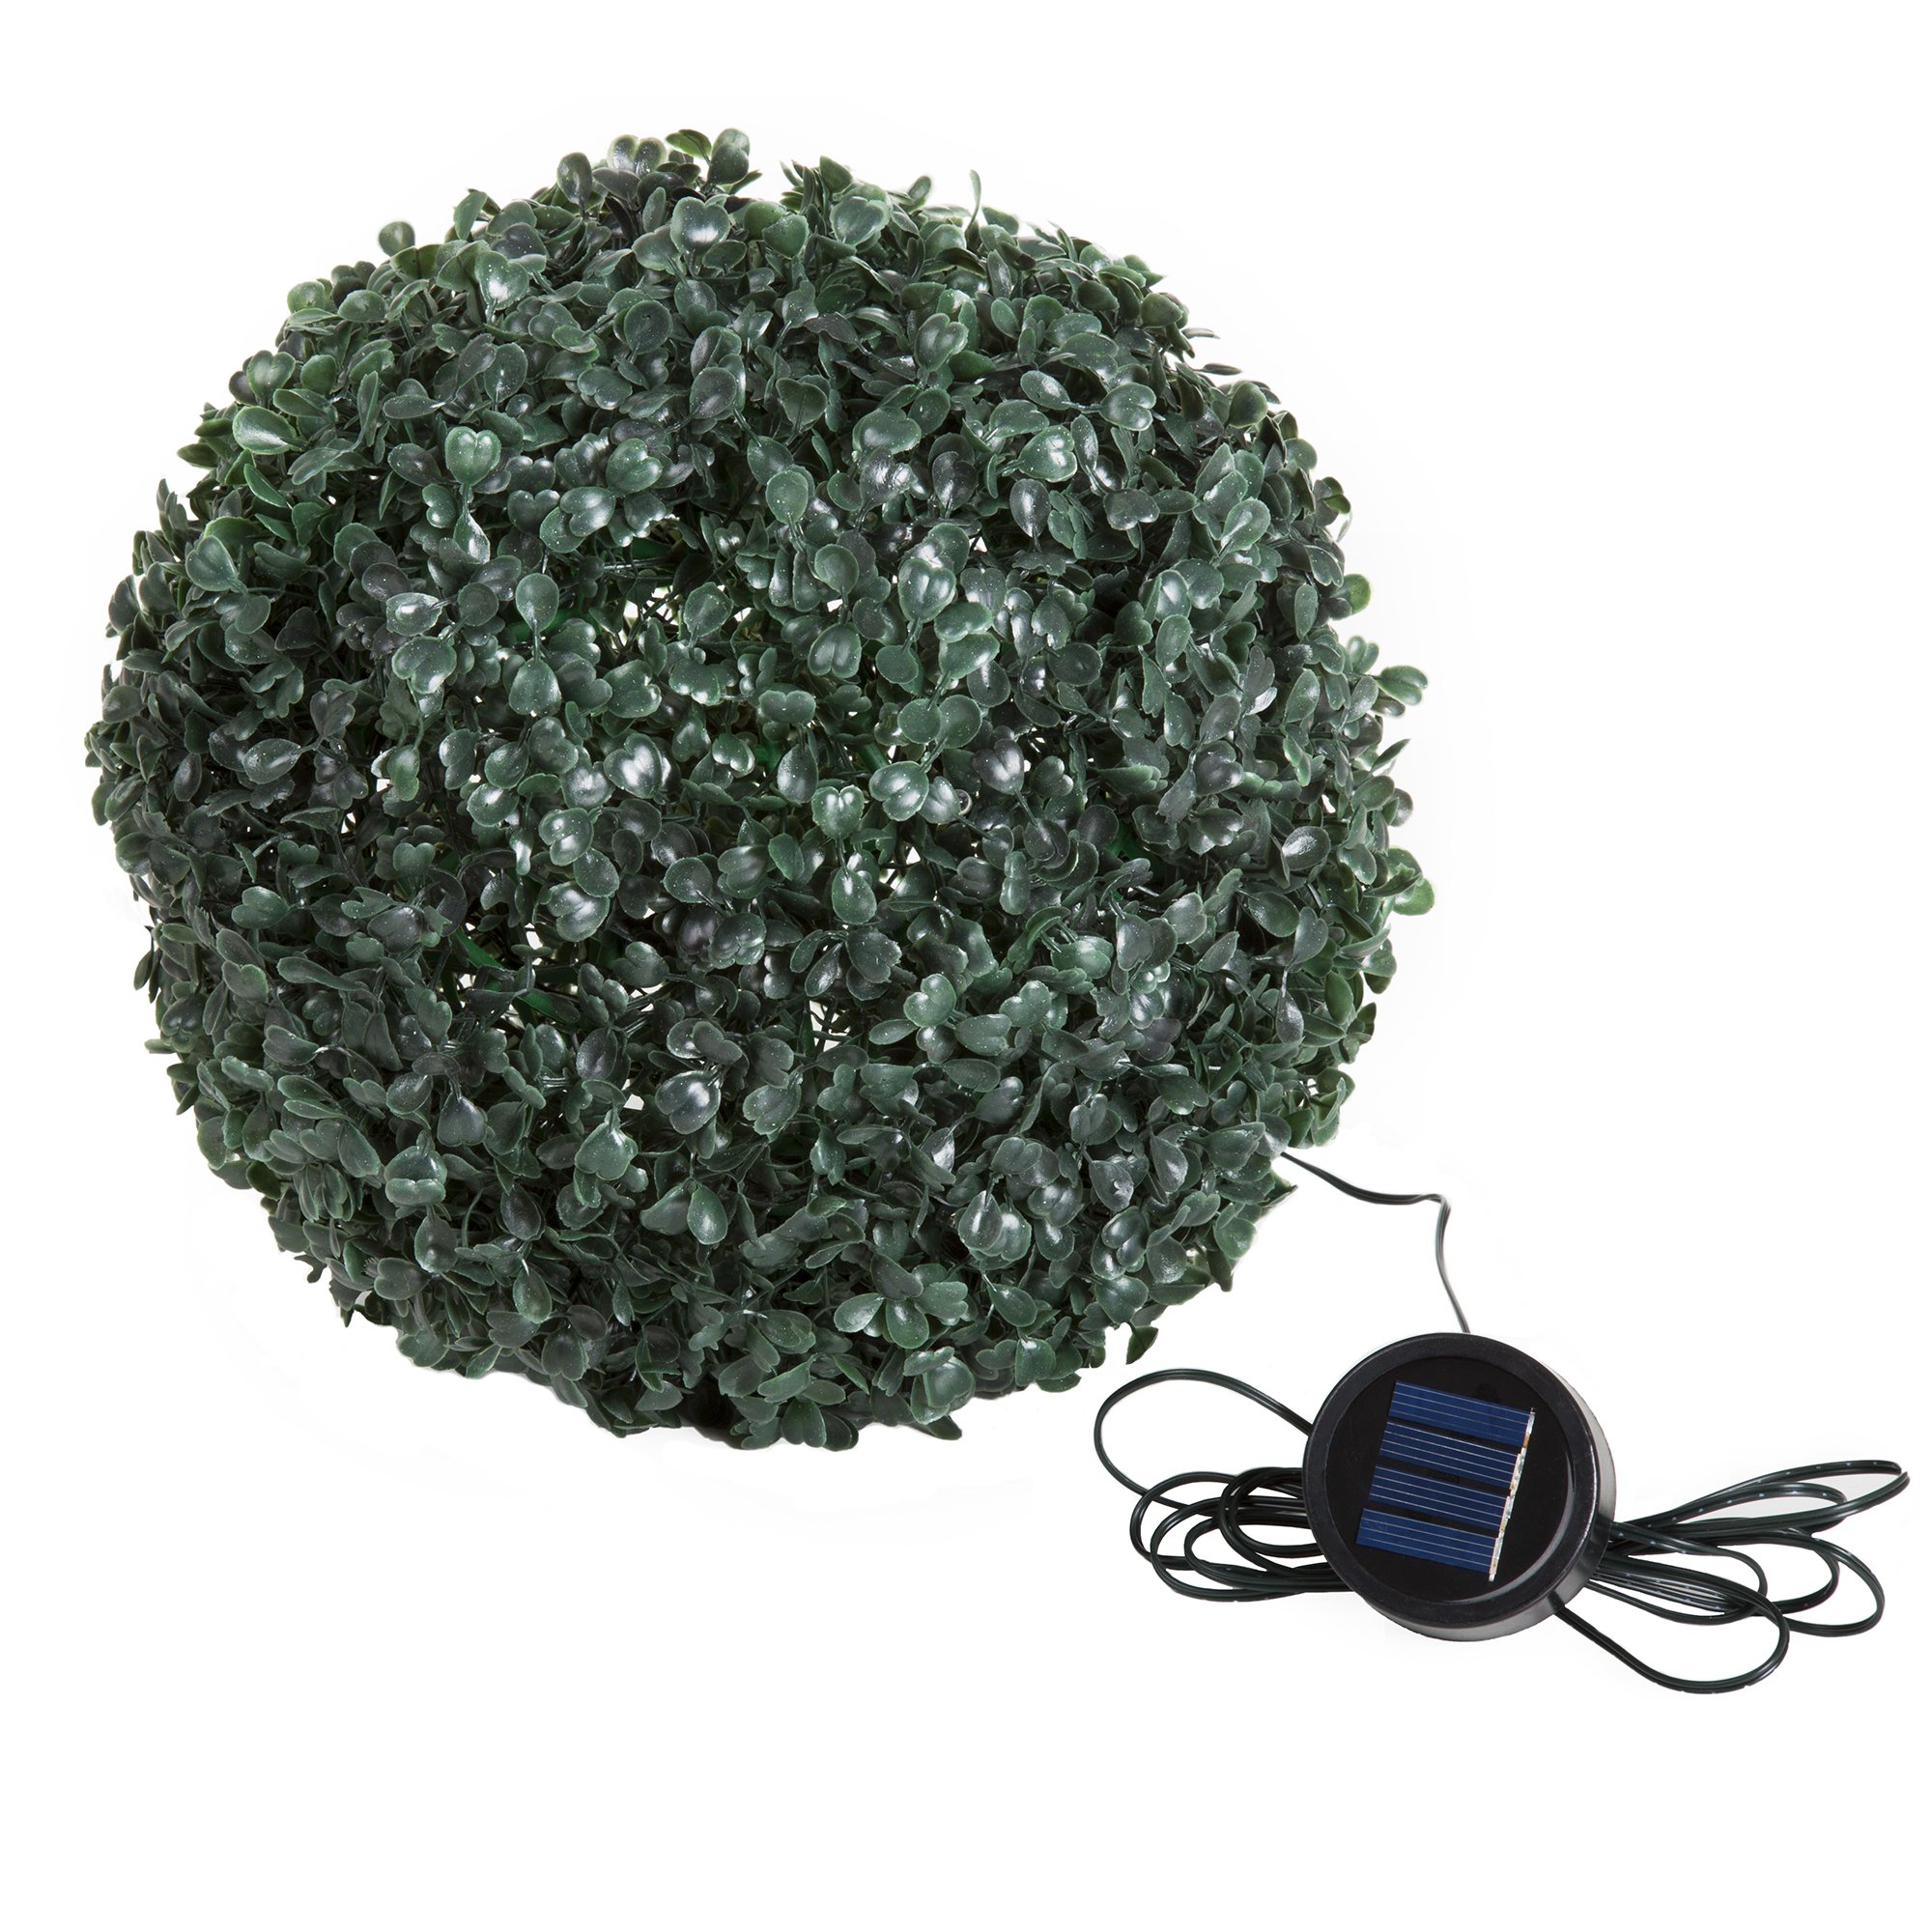 Pure Garden Topiary Solar Light Ball - 20 White LED Lights